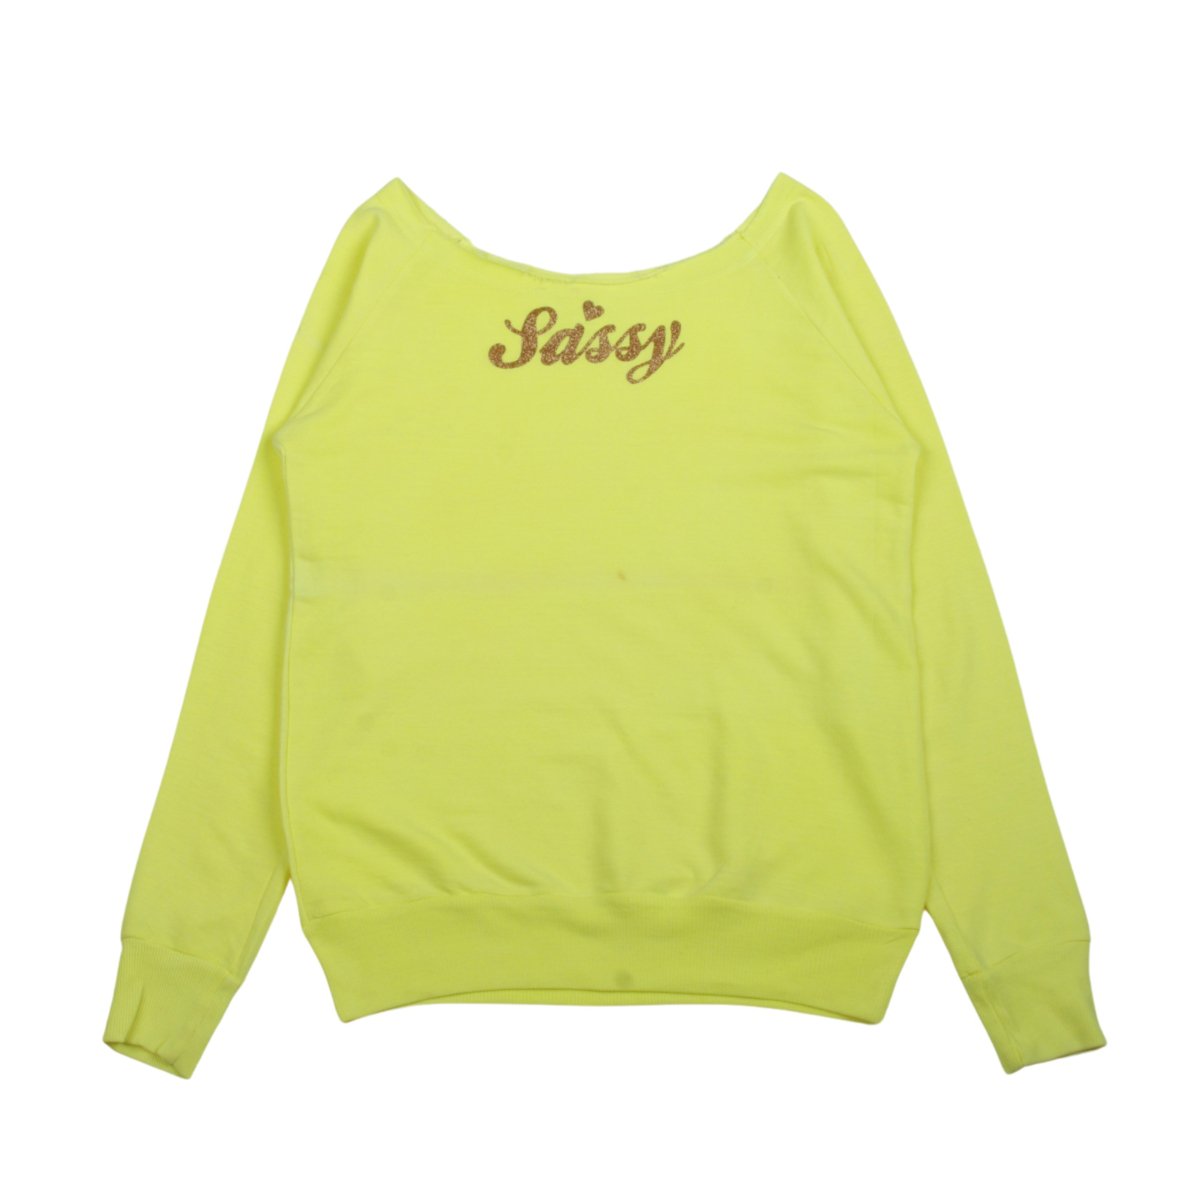 Sassy Sweatshirt【Yellow】